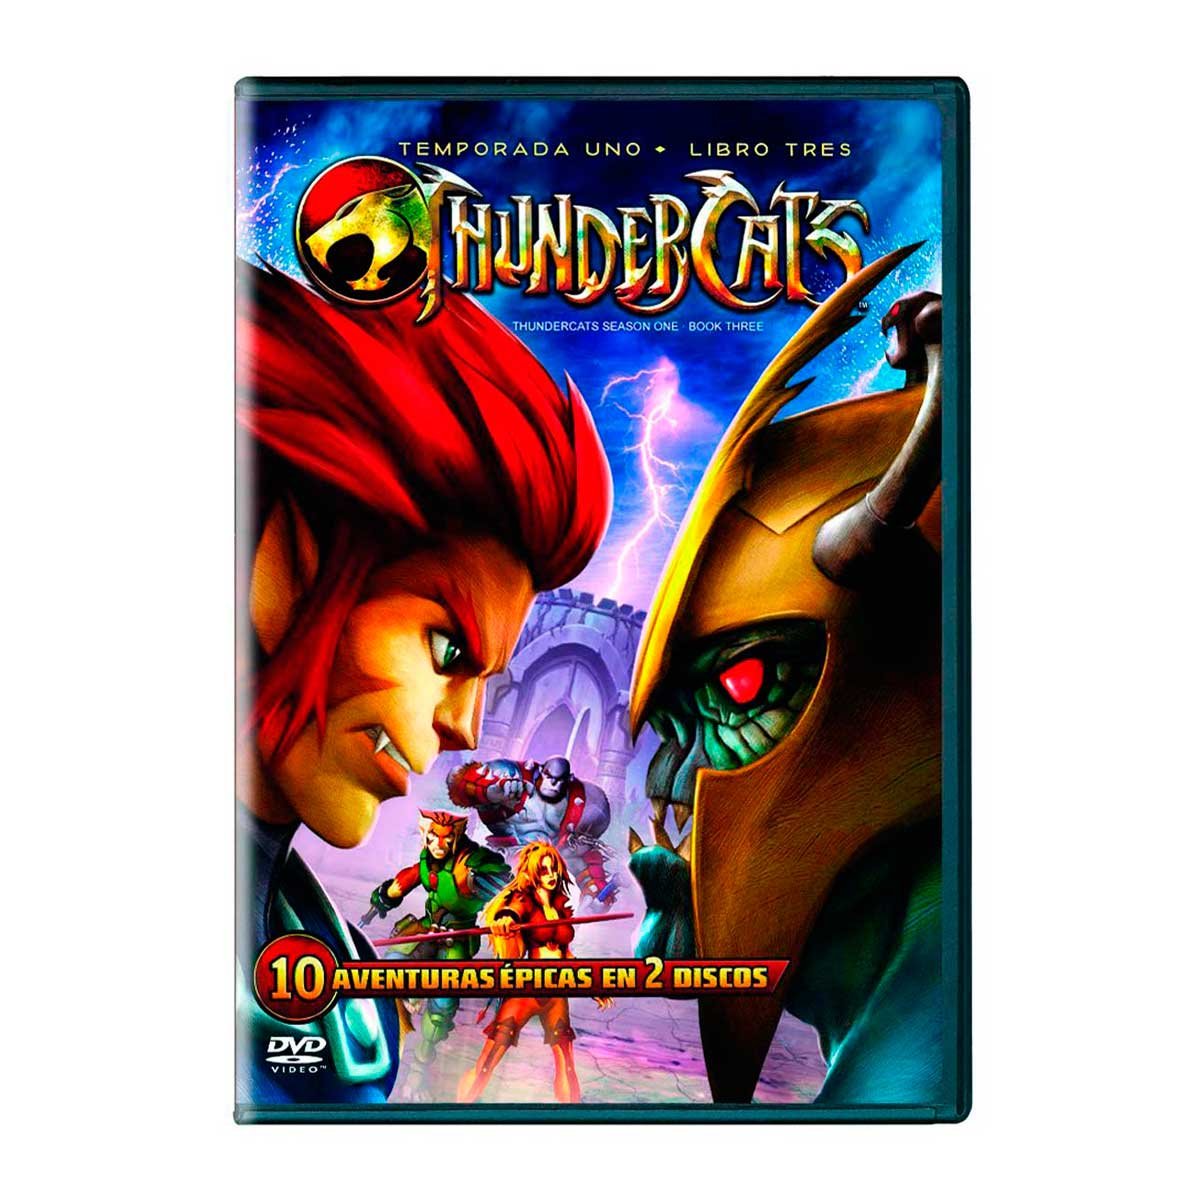 Dvd Thundercats : Temporada 1, Libro 3